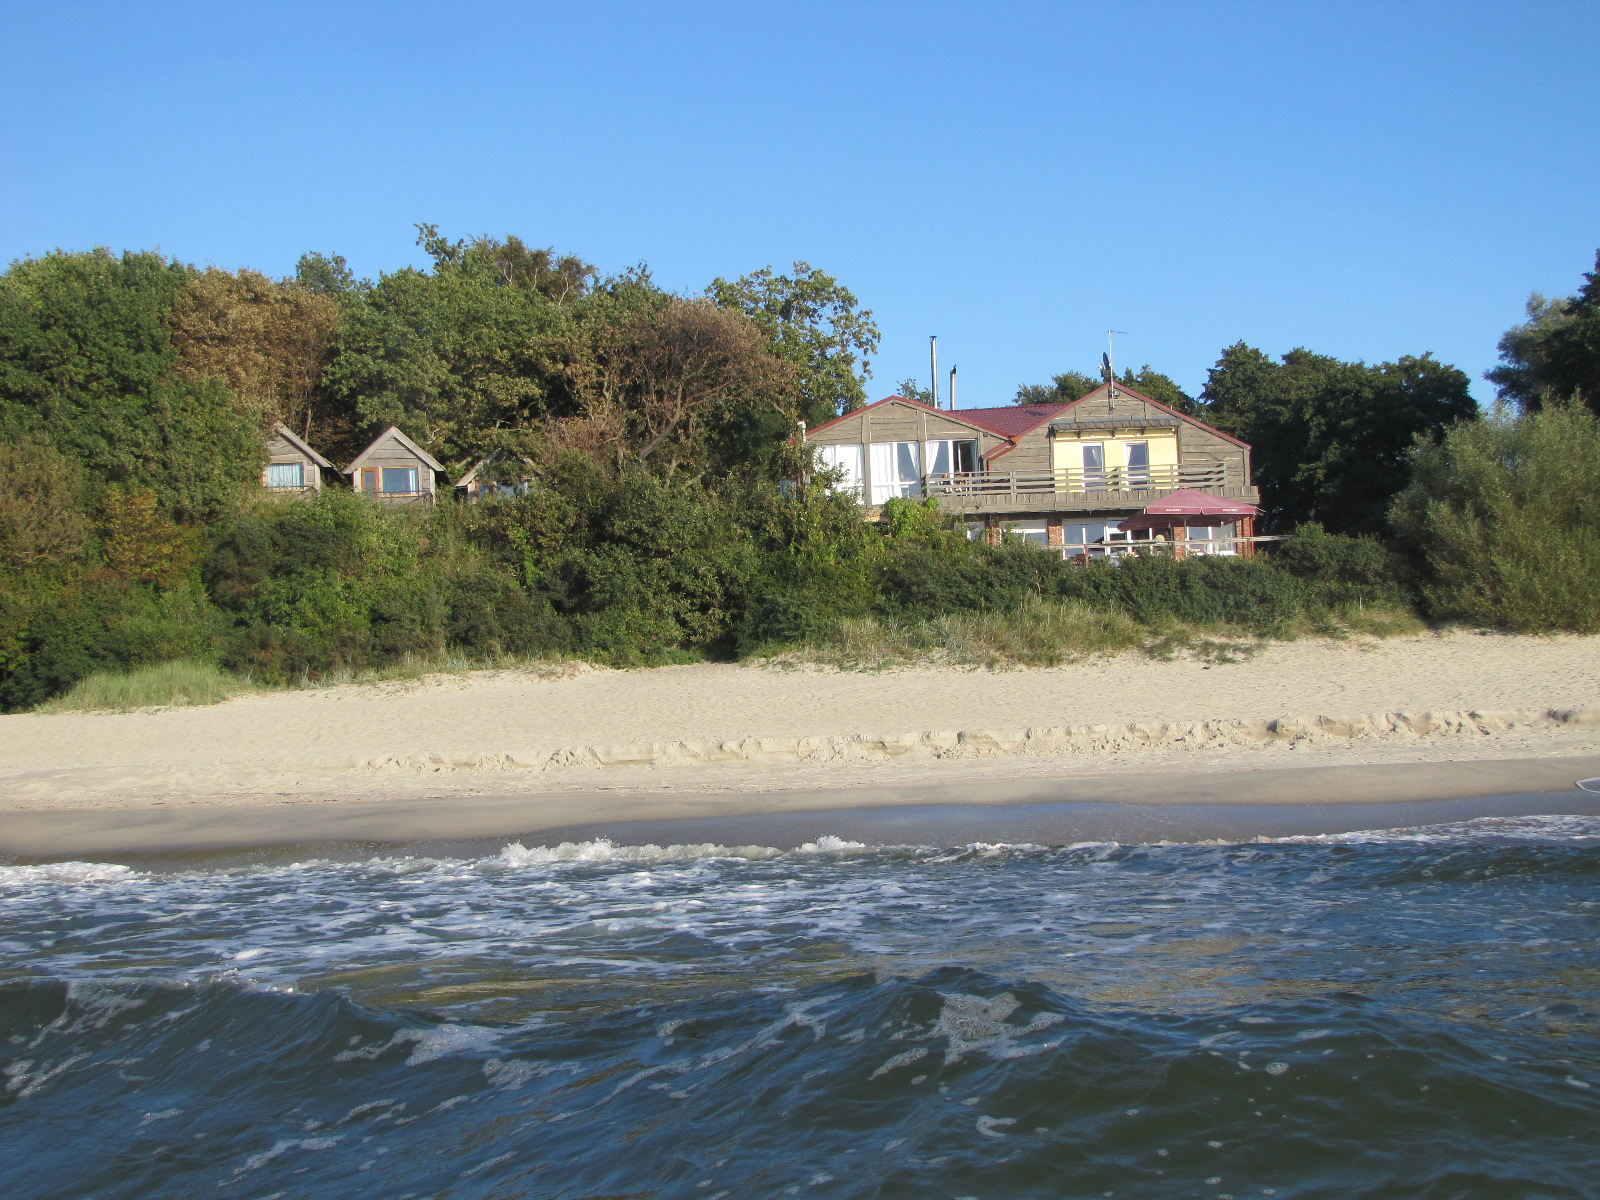 Zdjęcie Vitland beach położony w naturalnym obszarze